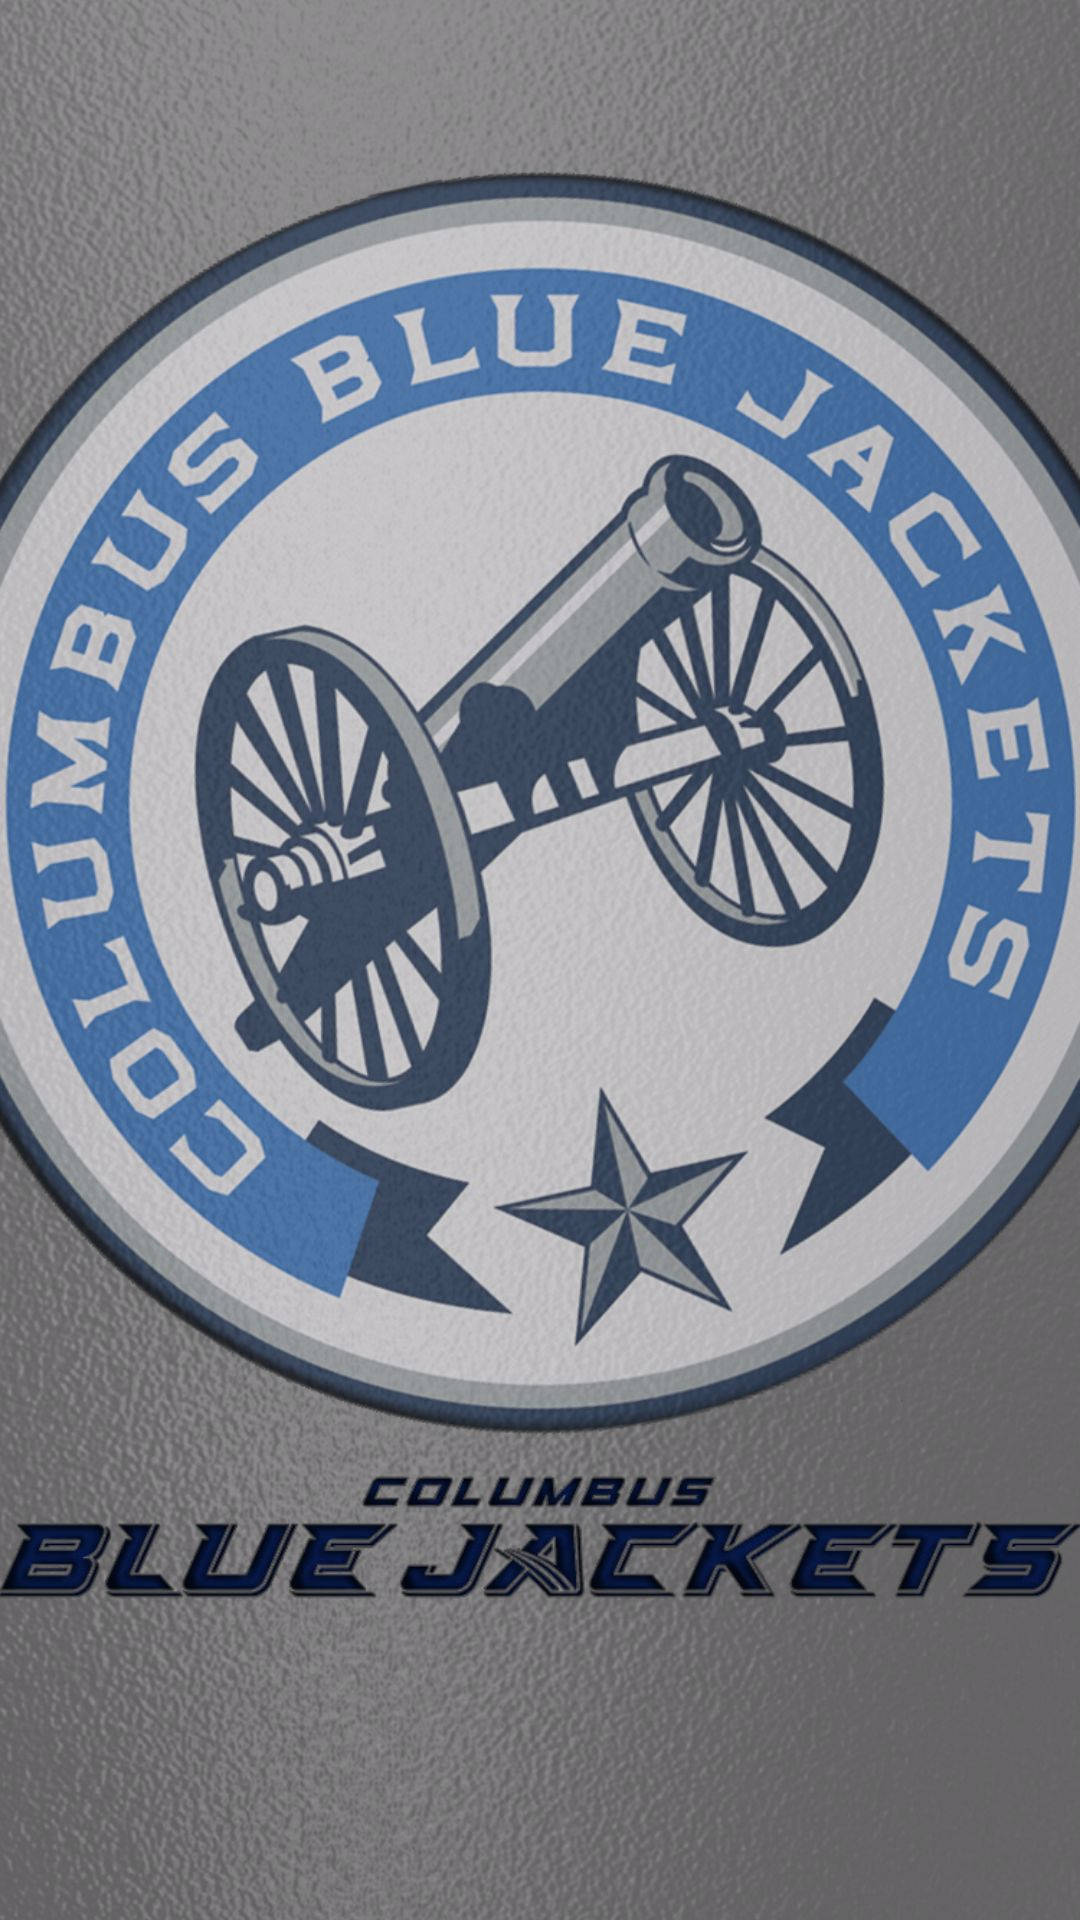 Old Columbus Blue Jacket Logo Background